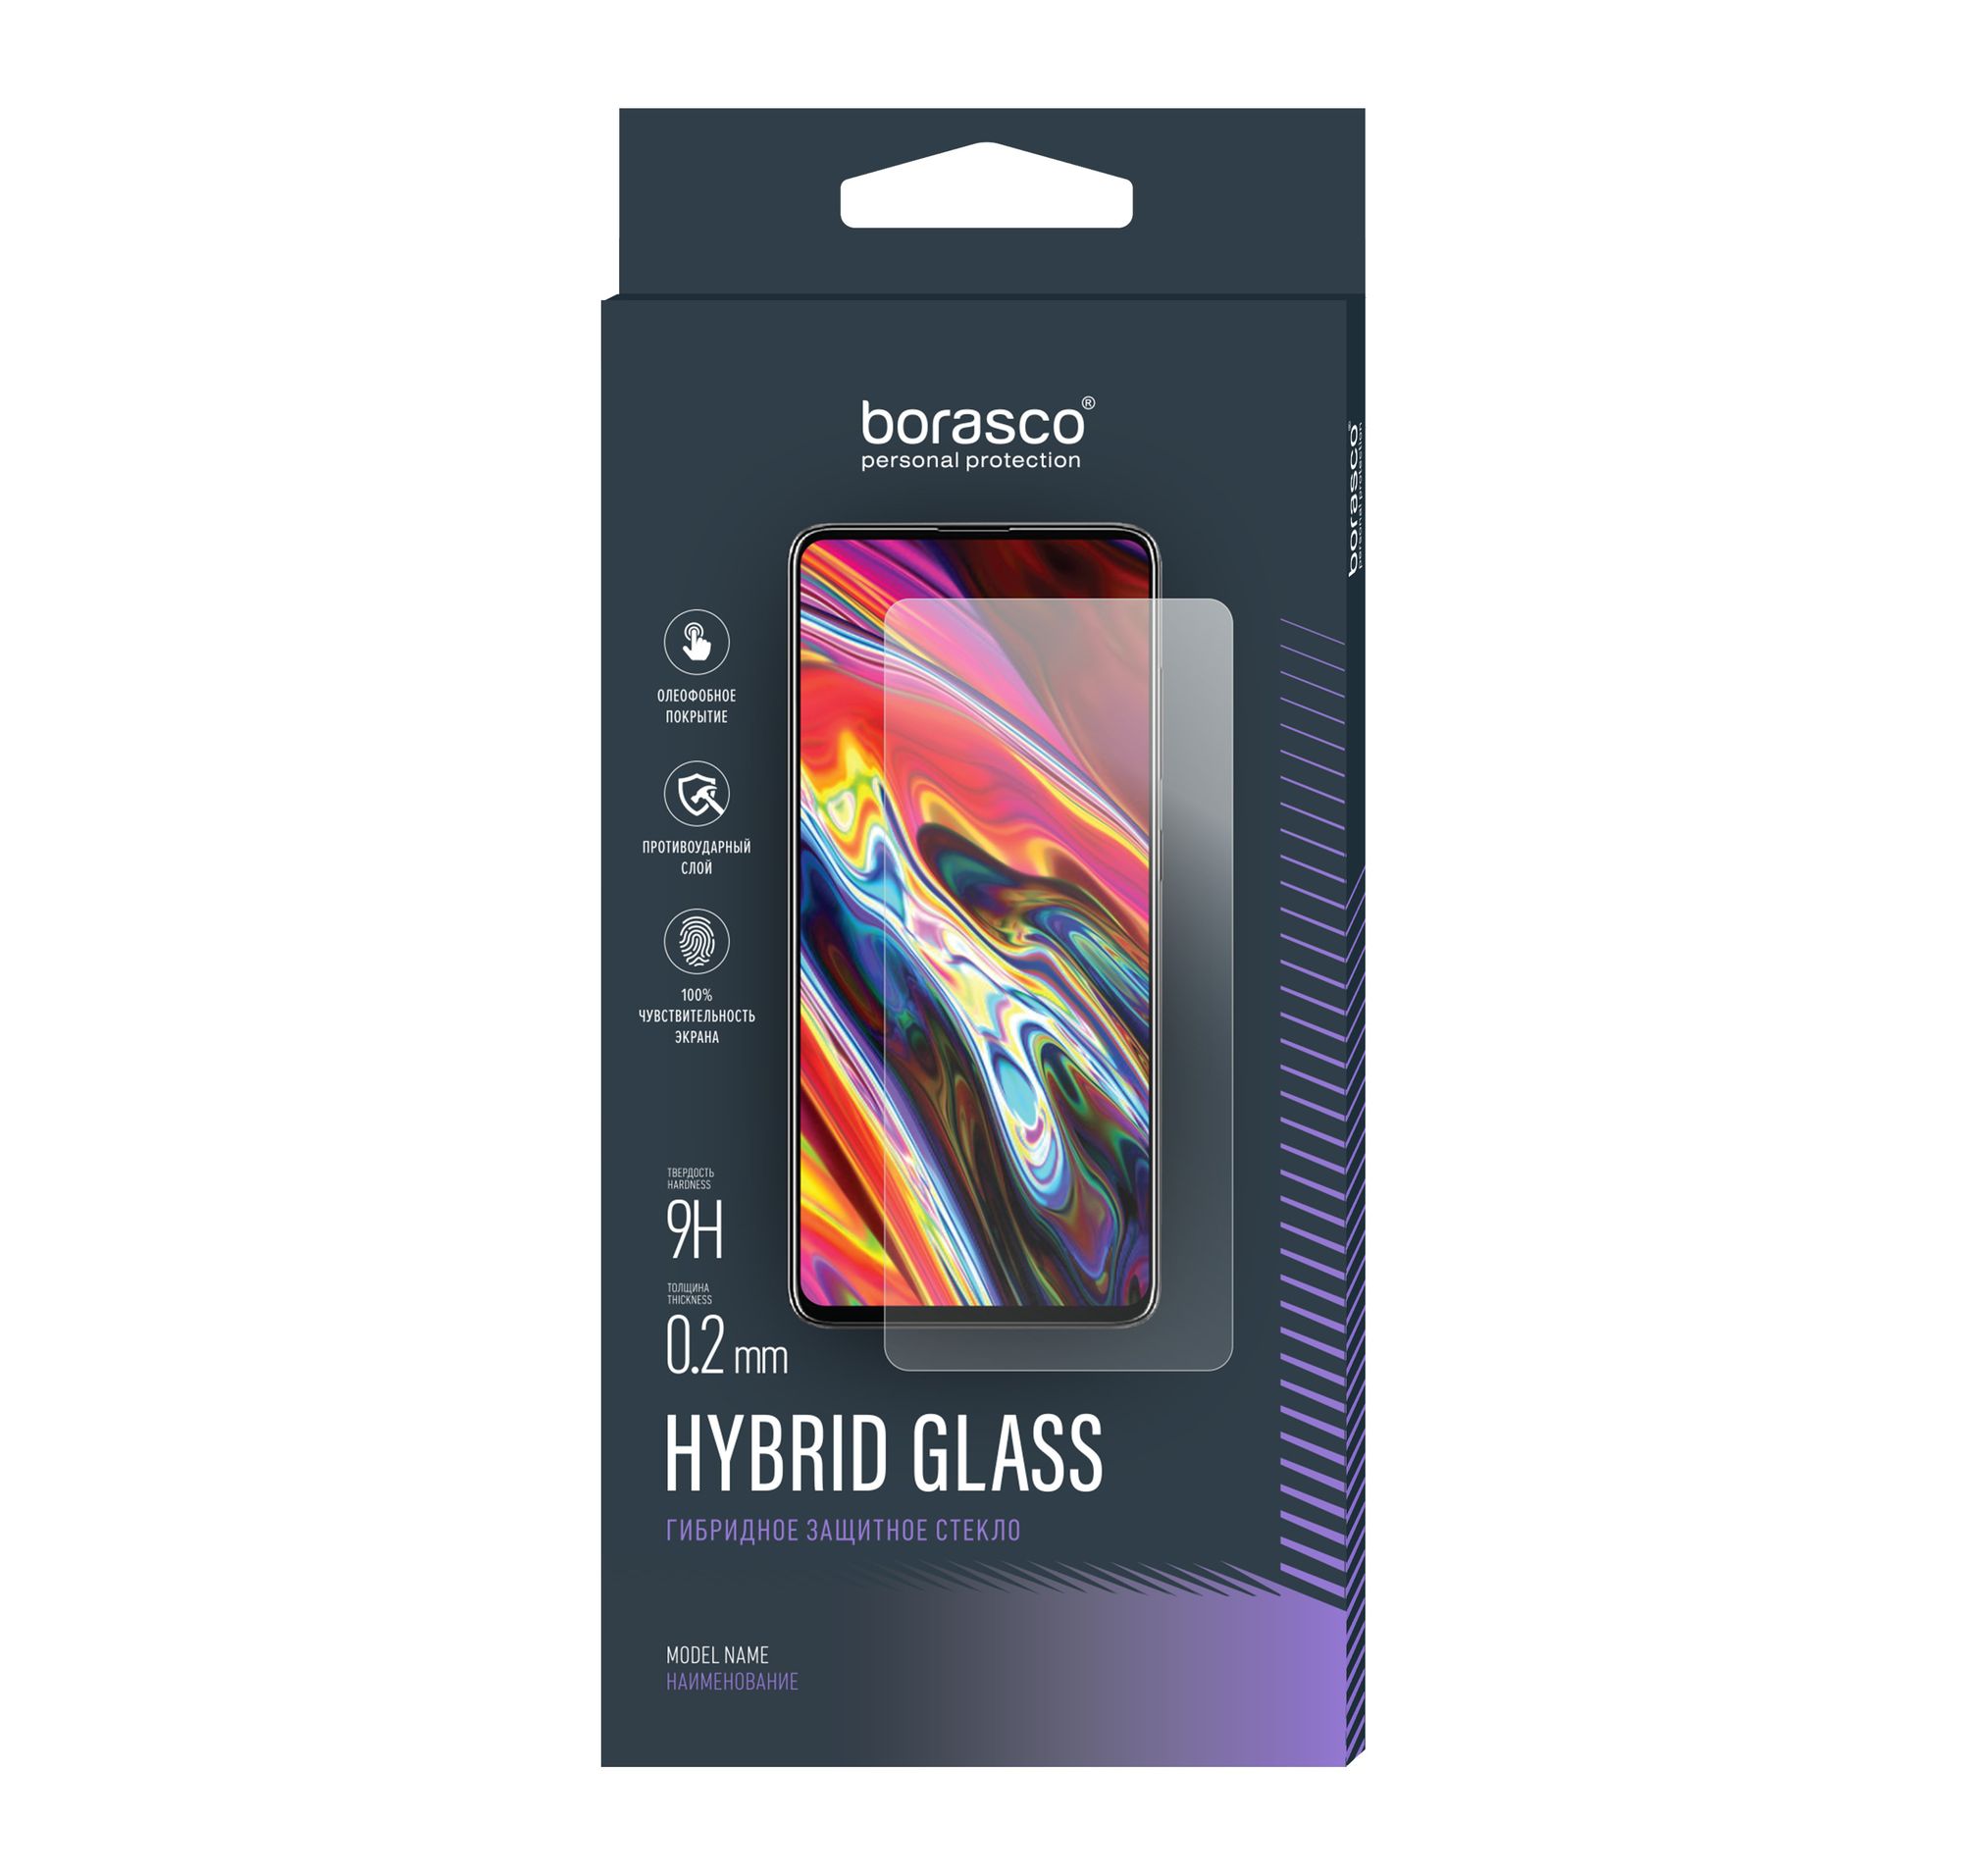 Стекло защитное Hybrid Glass VSP 0,26 мм для Sony Xperia Z1 2 шт закаленное защитное стекло для смартфонов sony xperia z5 premium z4 z3 plus z2 компактная защита экрана для sony z1 z